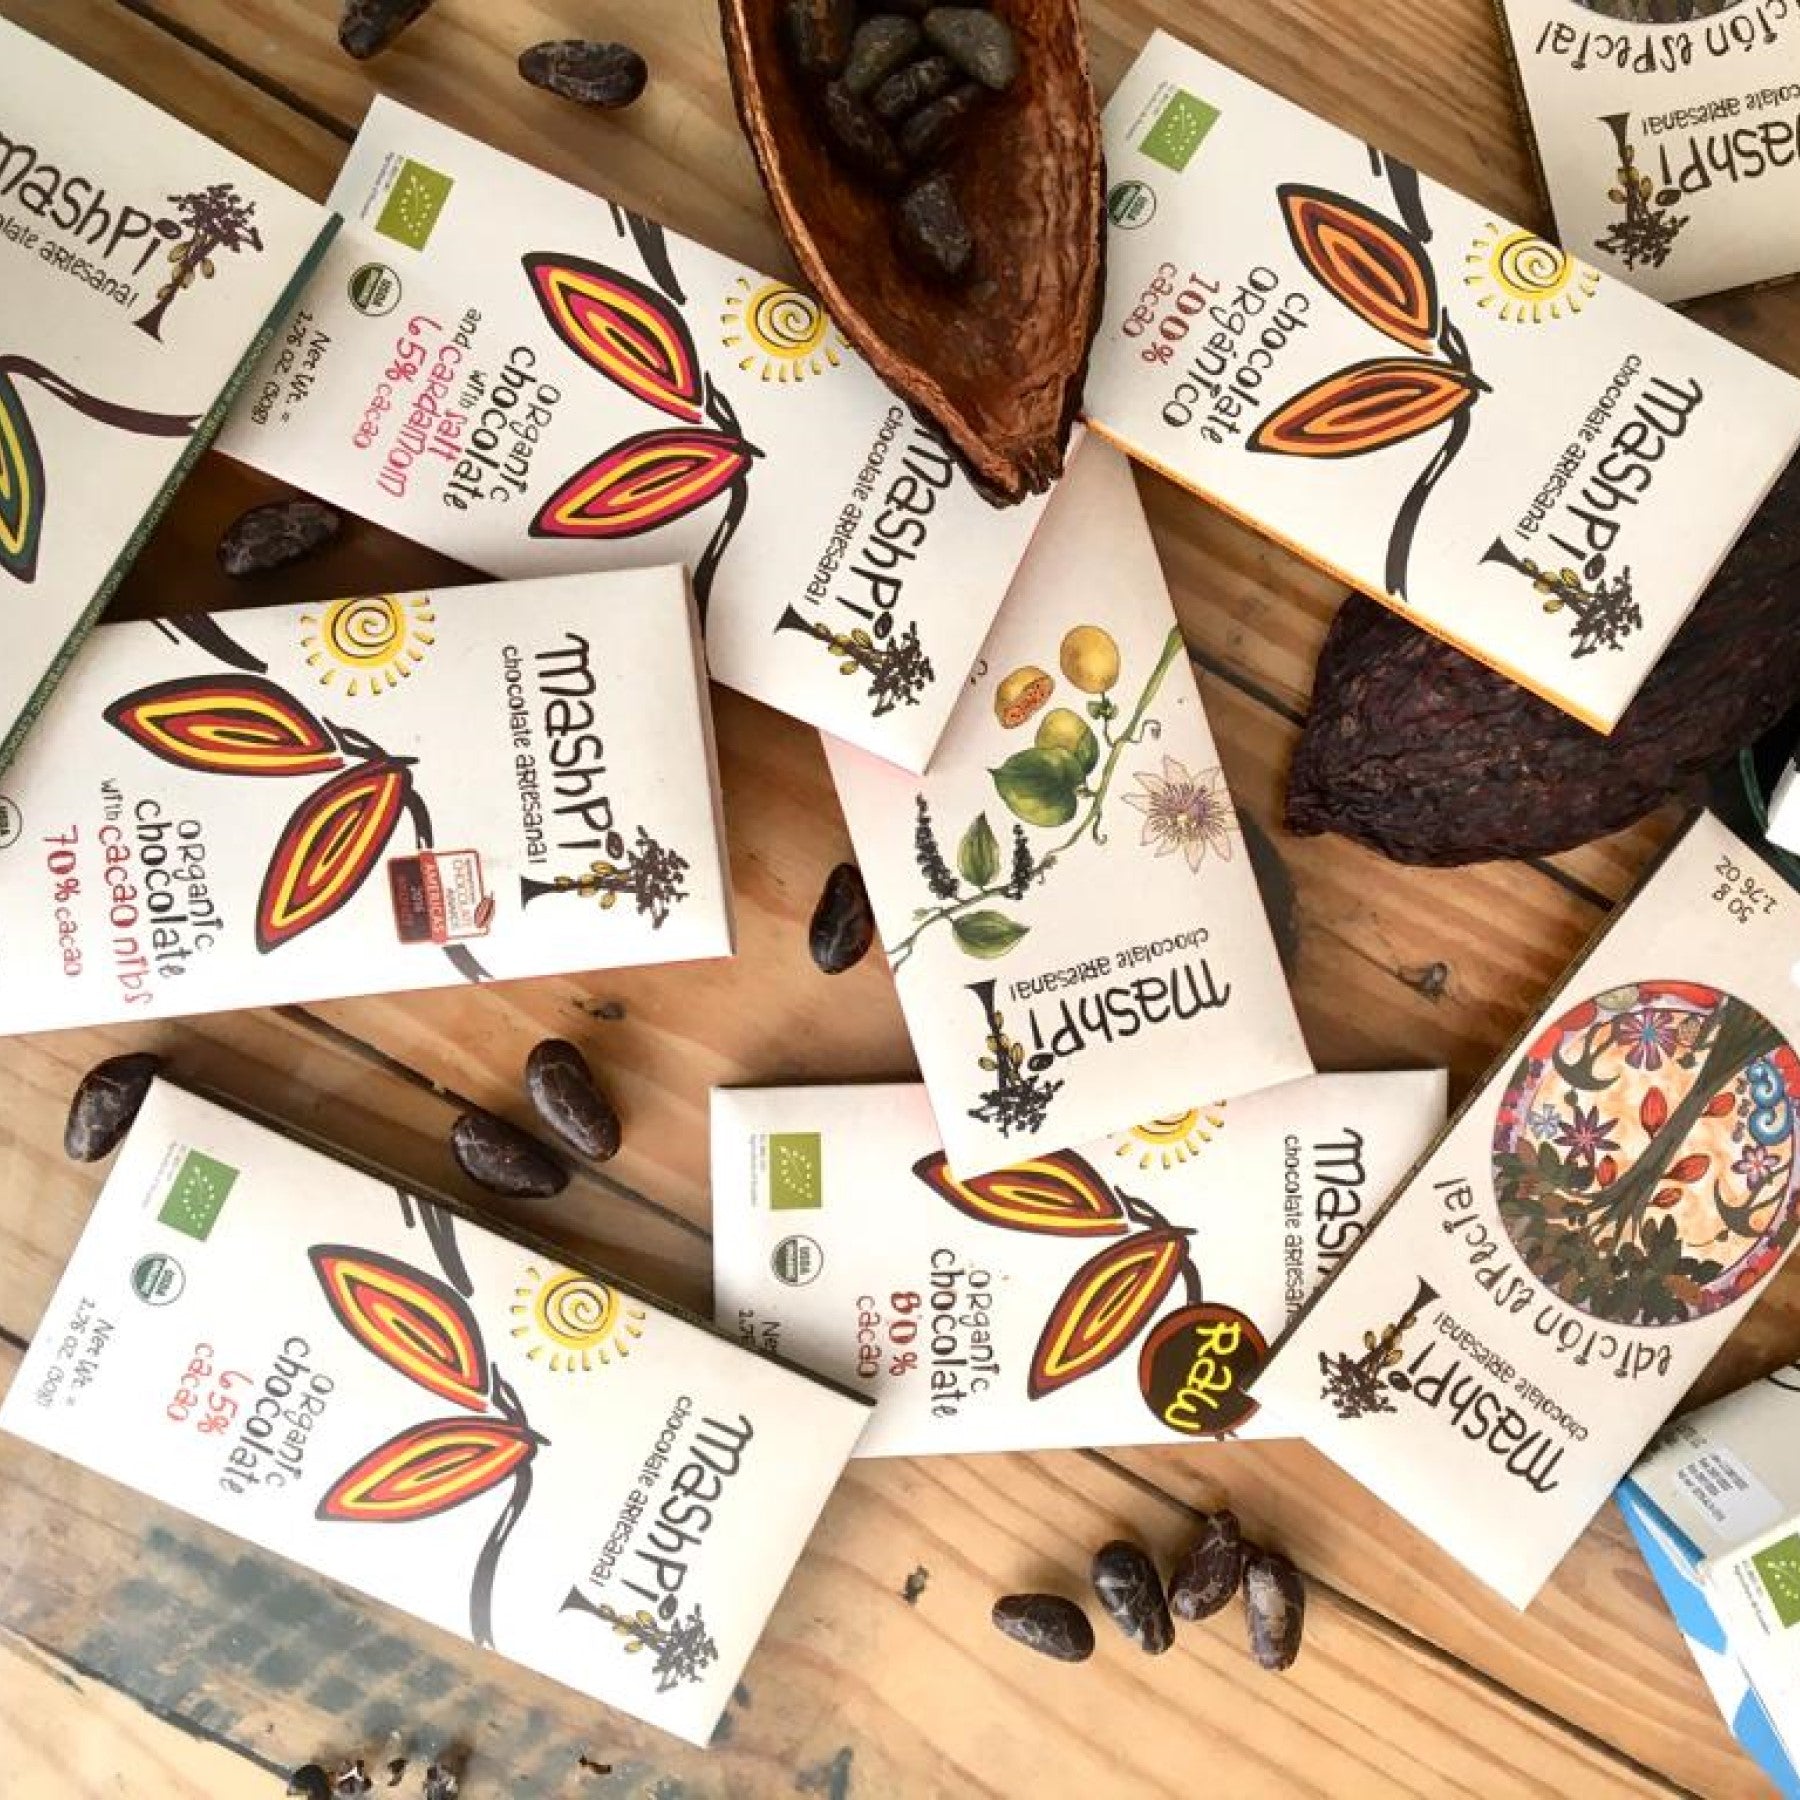 Mashpi Artesenal Chocolate Bars Line Single Origin-Made in Ecuador - including cardamom, cacao nibs; 65%, 80%, and 100% cacao content